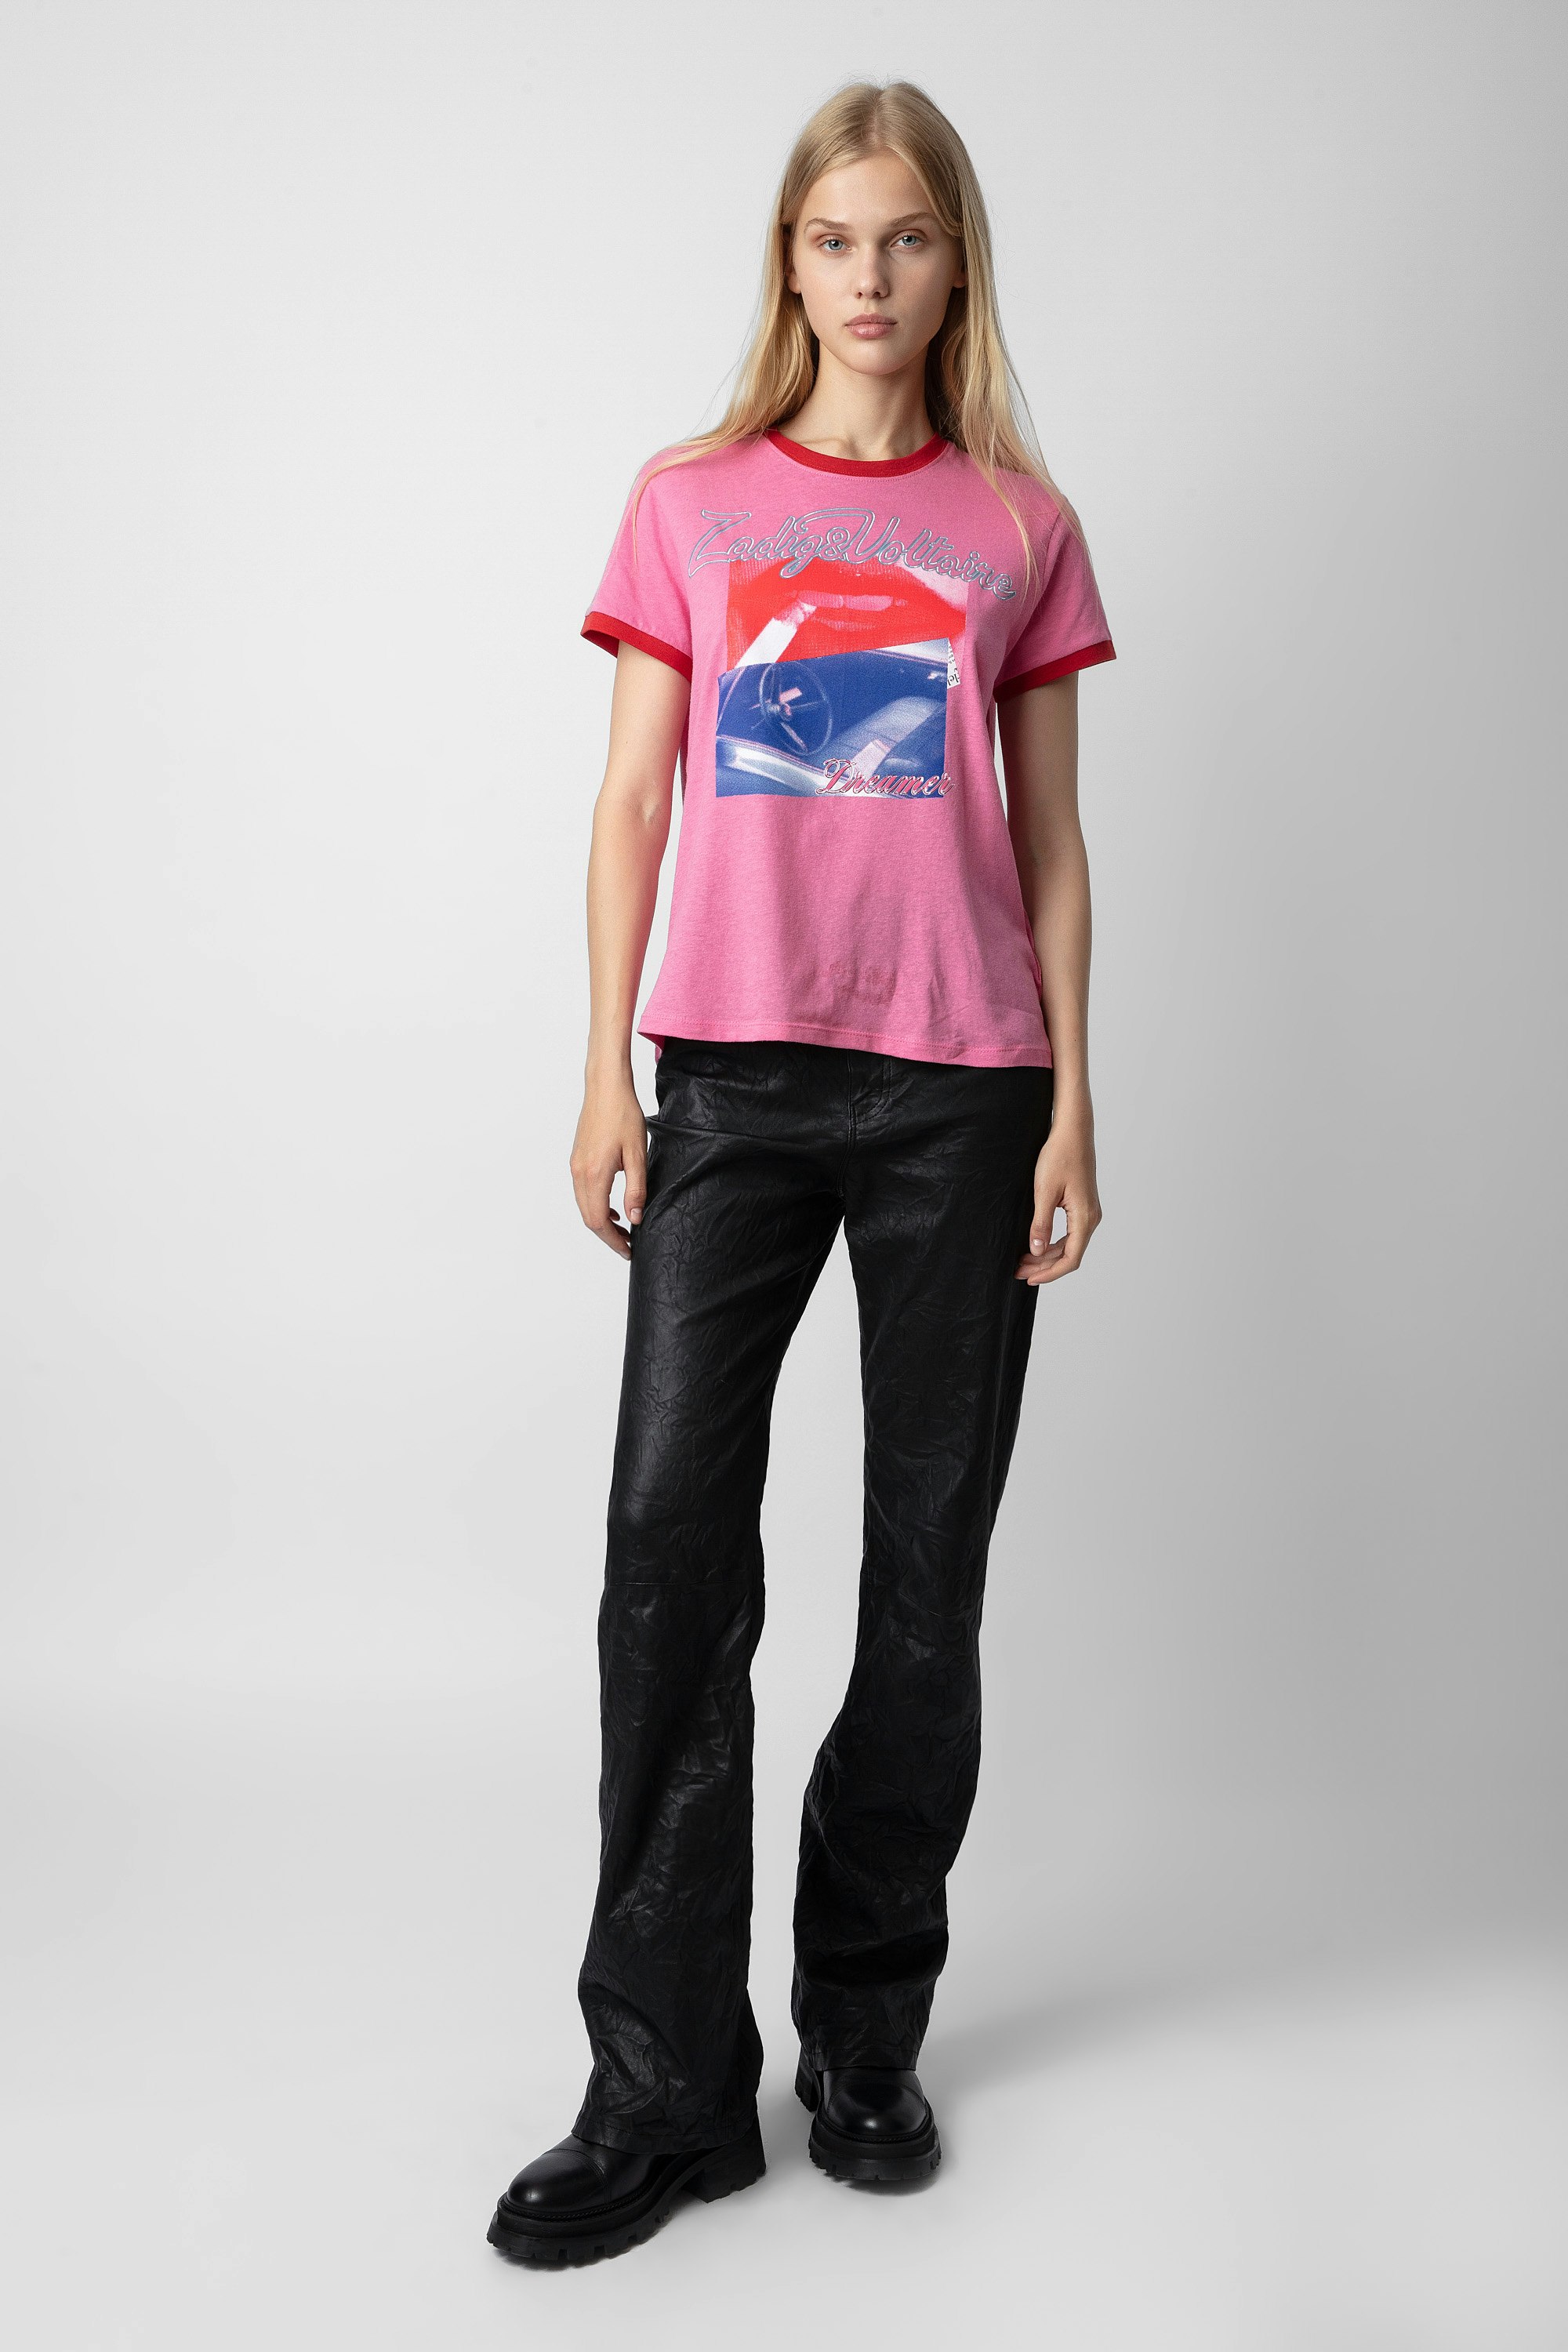 T-shirt Zoe Photoprint - T-shirt rosa da donna con stampa fotografica e bordi contrastanti.